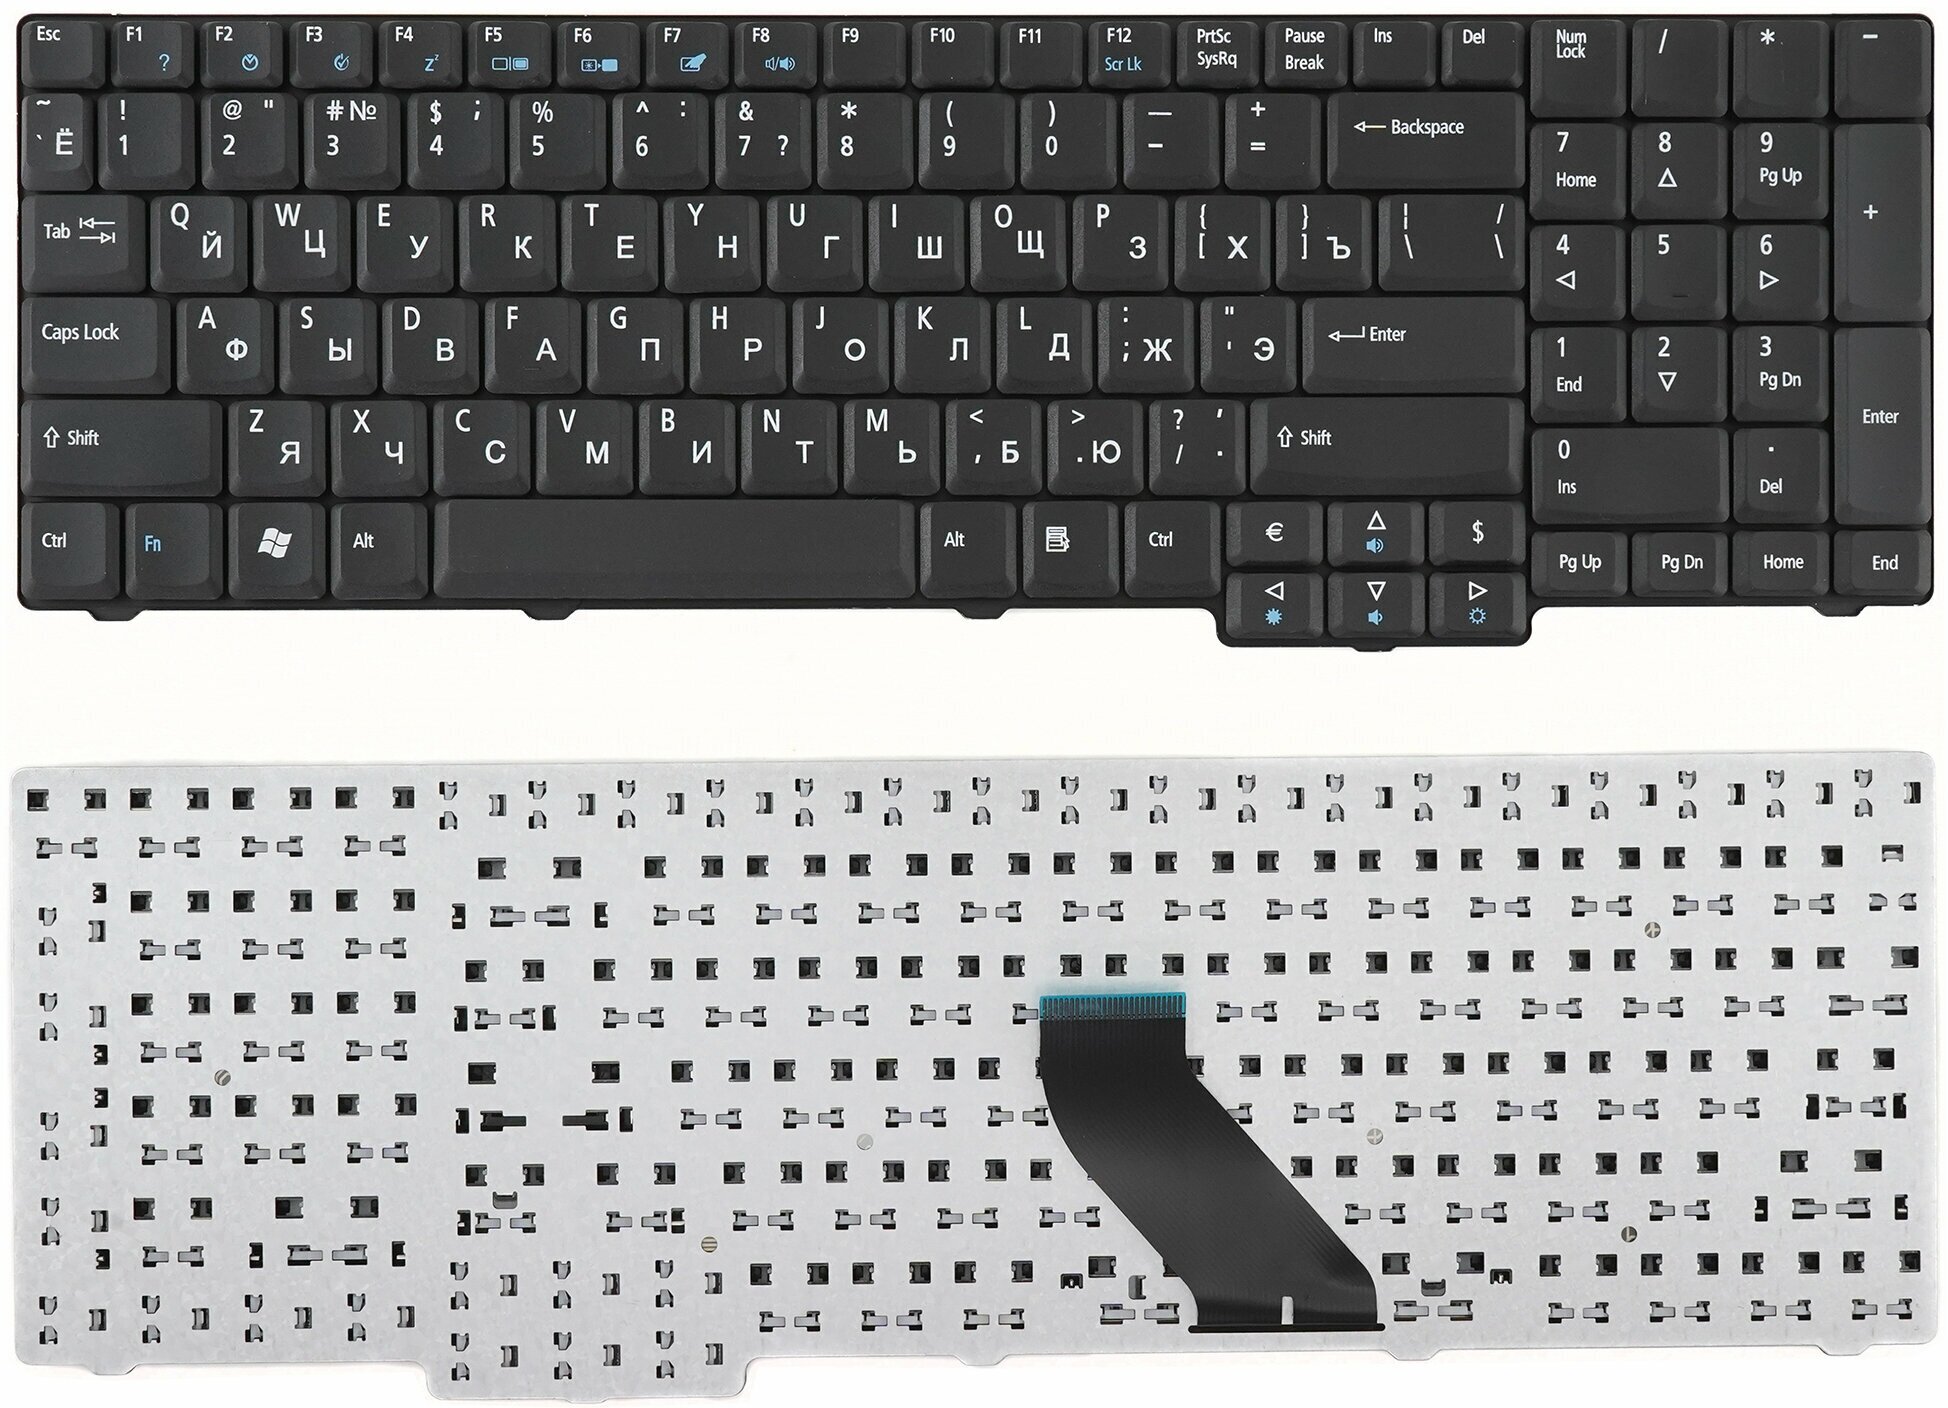 Клавиатура для ноутбука Acer Aspire 6530, 9300, 5737 черная матовая